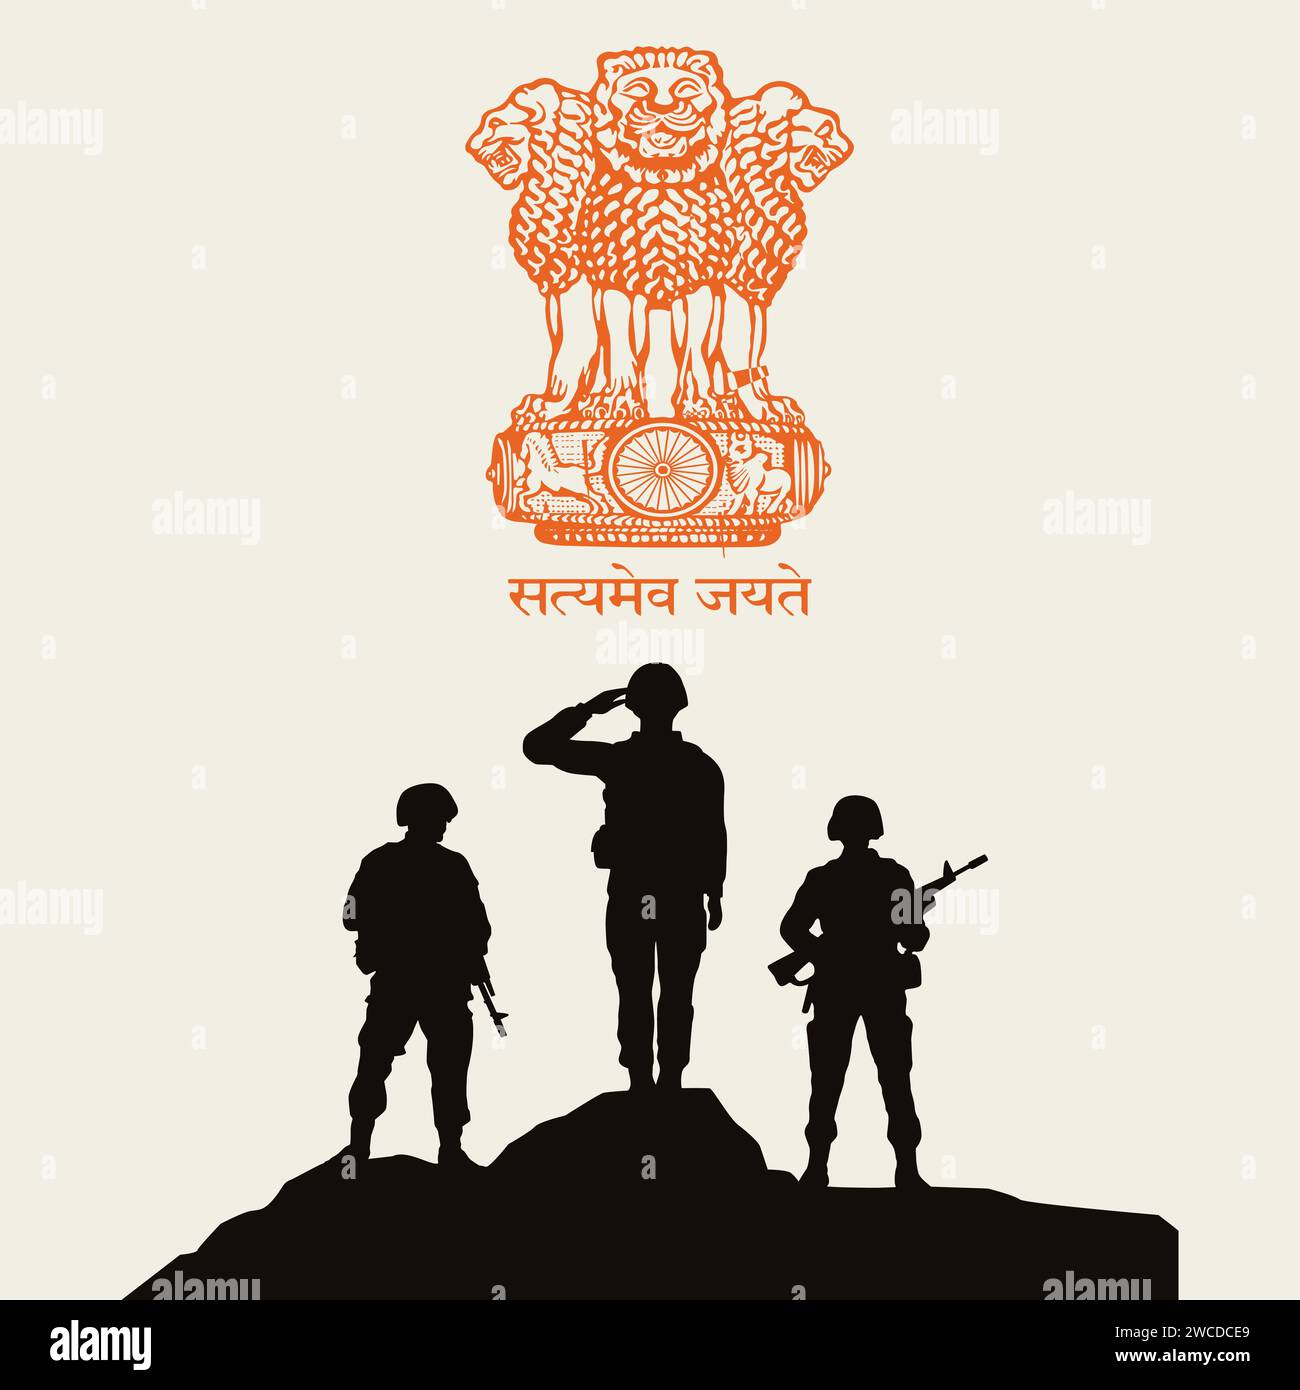 Tag Der Indischen Armee Mit Glückwunsch. Illustration des Armeemanns. Tag Der Indischen Armee Stock Vektor